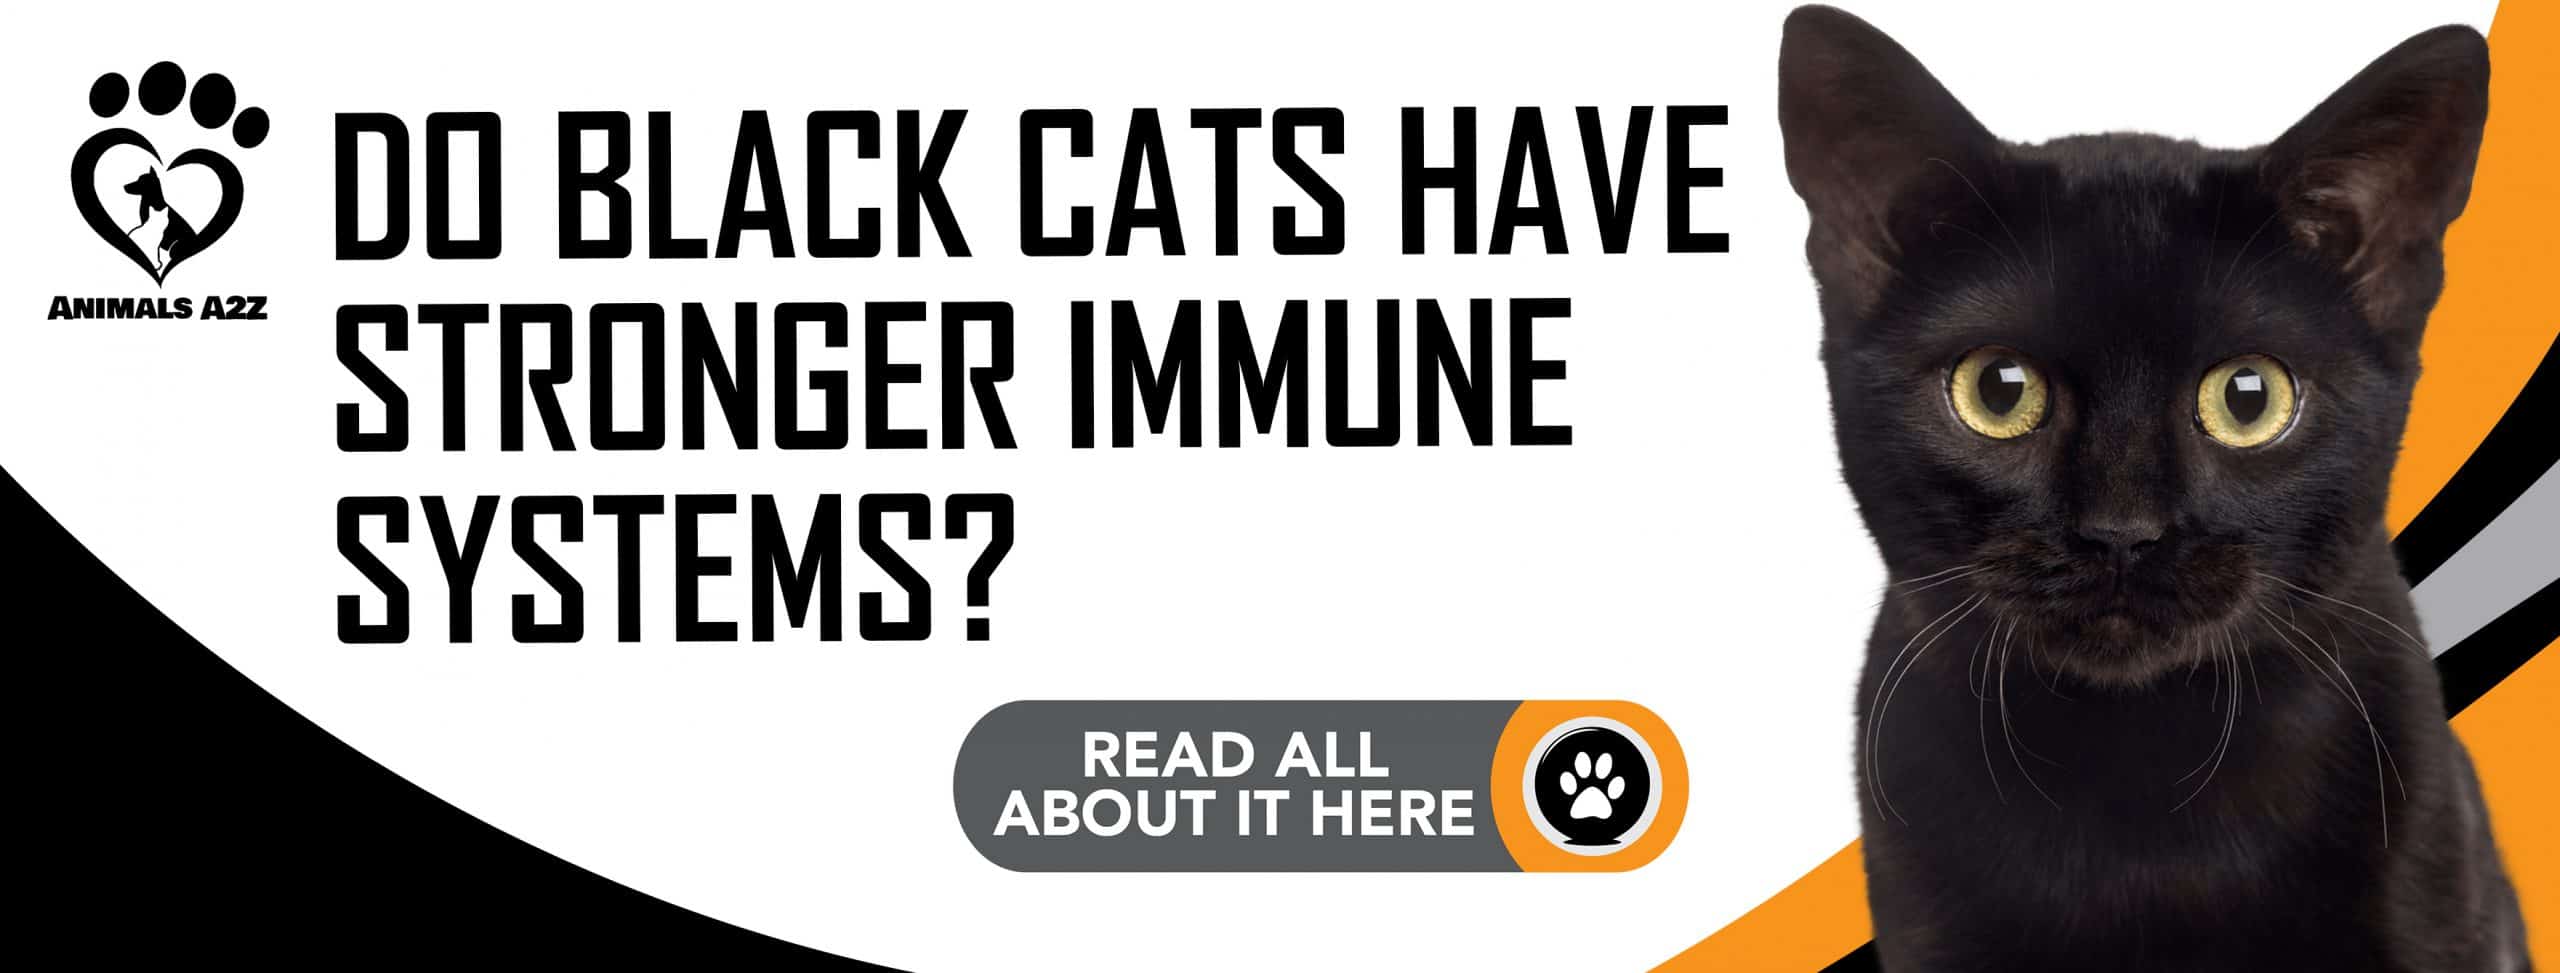 Haben schwarze Katzen ein stärkeres Immunsystem?